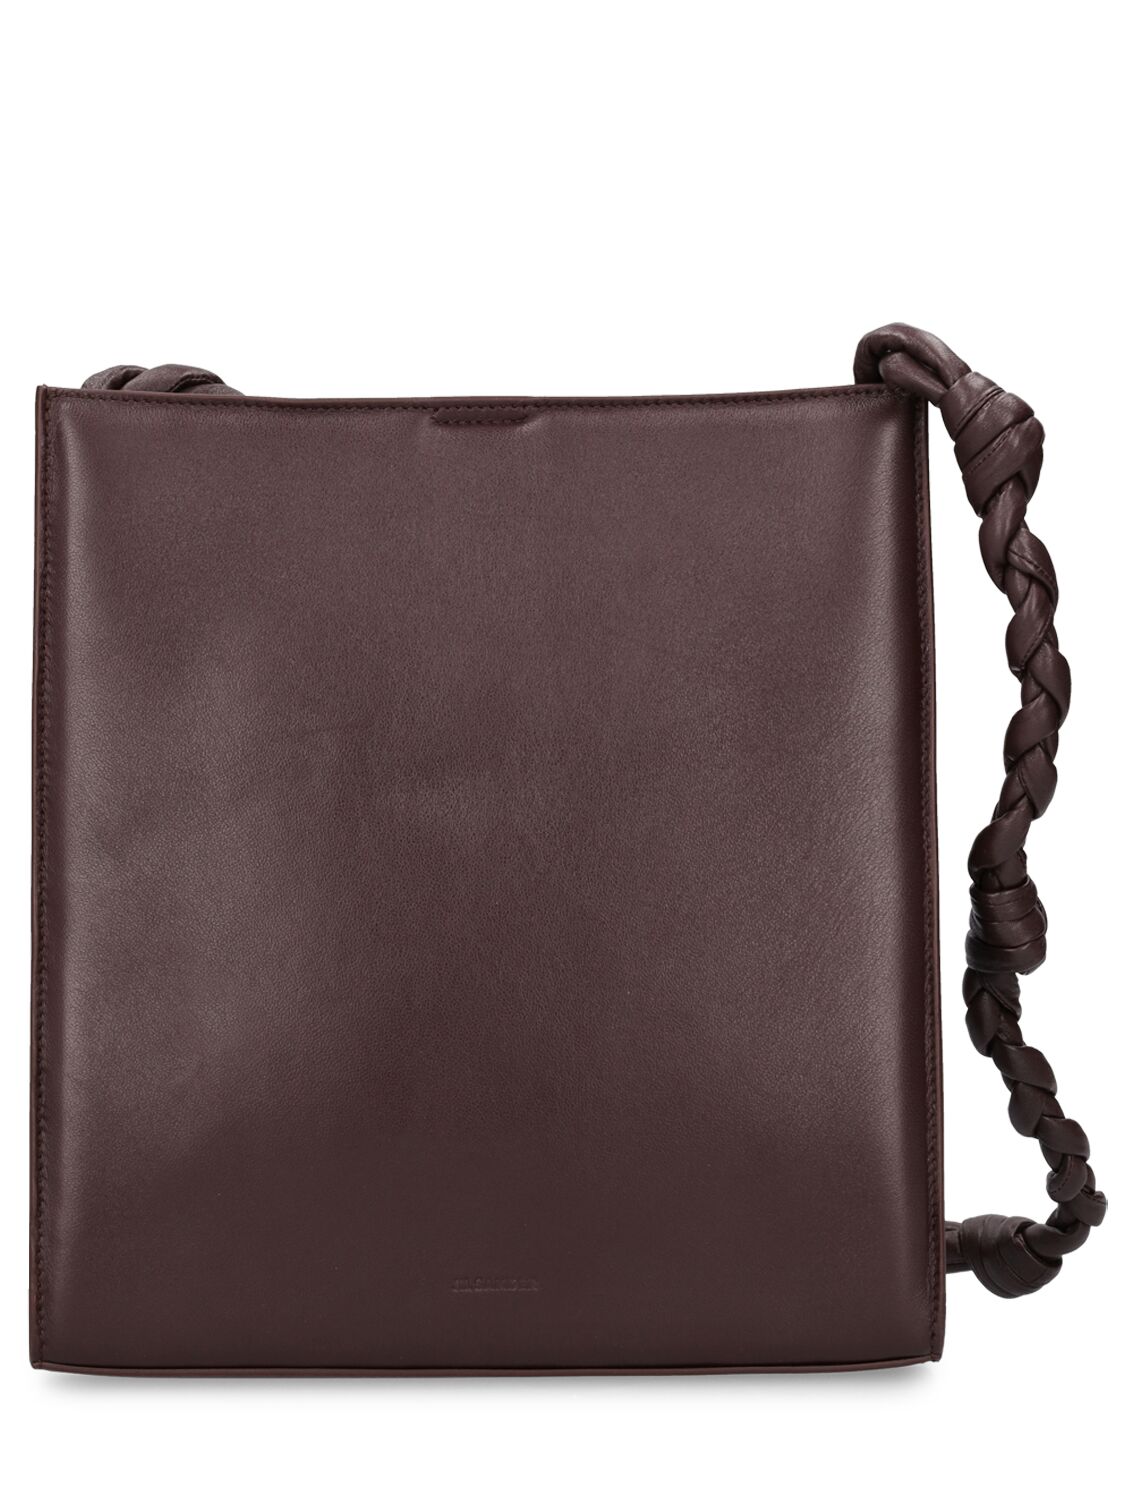 Image of Medium Tangle Padded Shoulder Bag